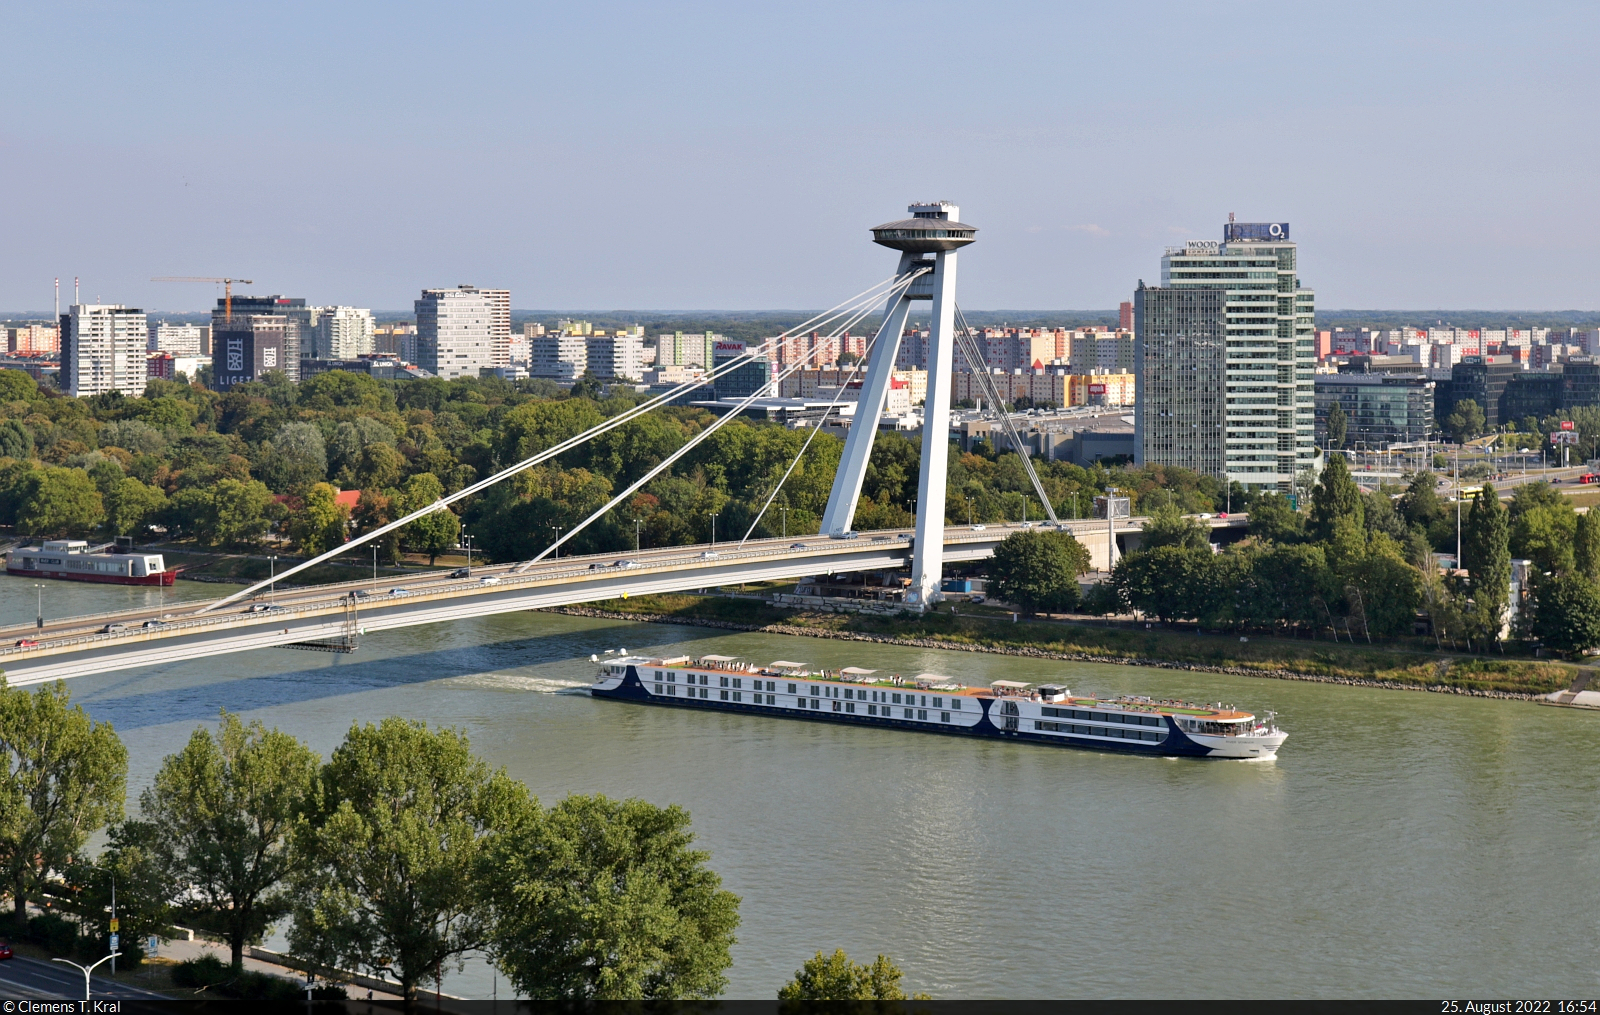 Bratislava (SK):
Ein Blickfang von Weitem ist der 95 Meter hohe UFO-Turm auf der Brcke des Slowakischen Nationalaufstandes (Most SNP). Diesen unterquert gerade ein Kreuzfahrtschiff auf der Donau.

🕓 25.8.2022 | 16:54 Uhr